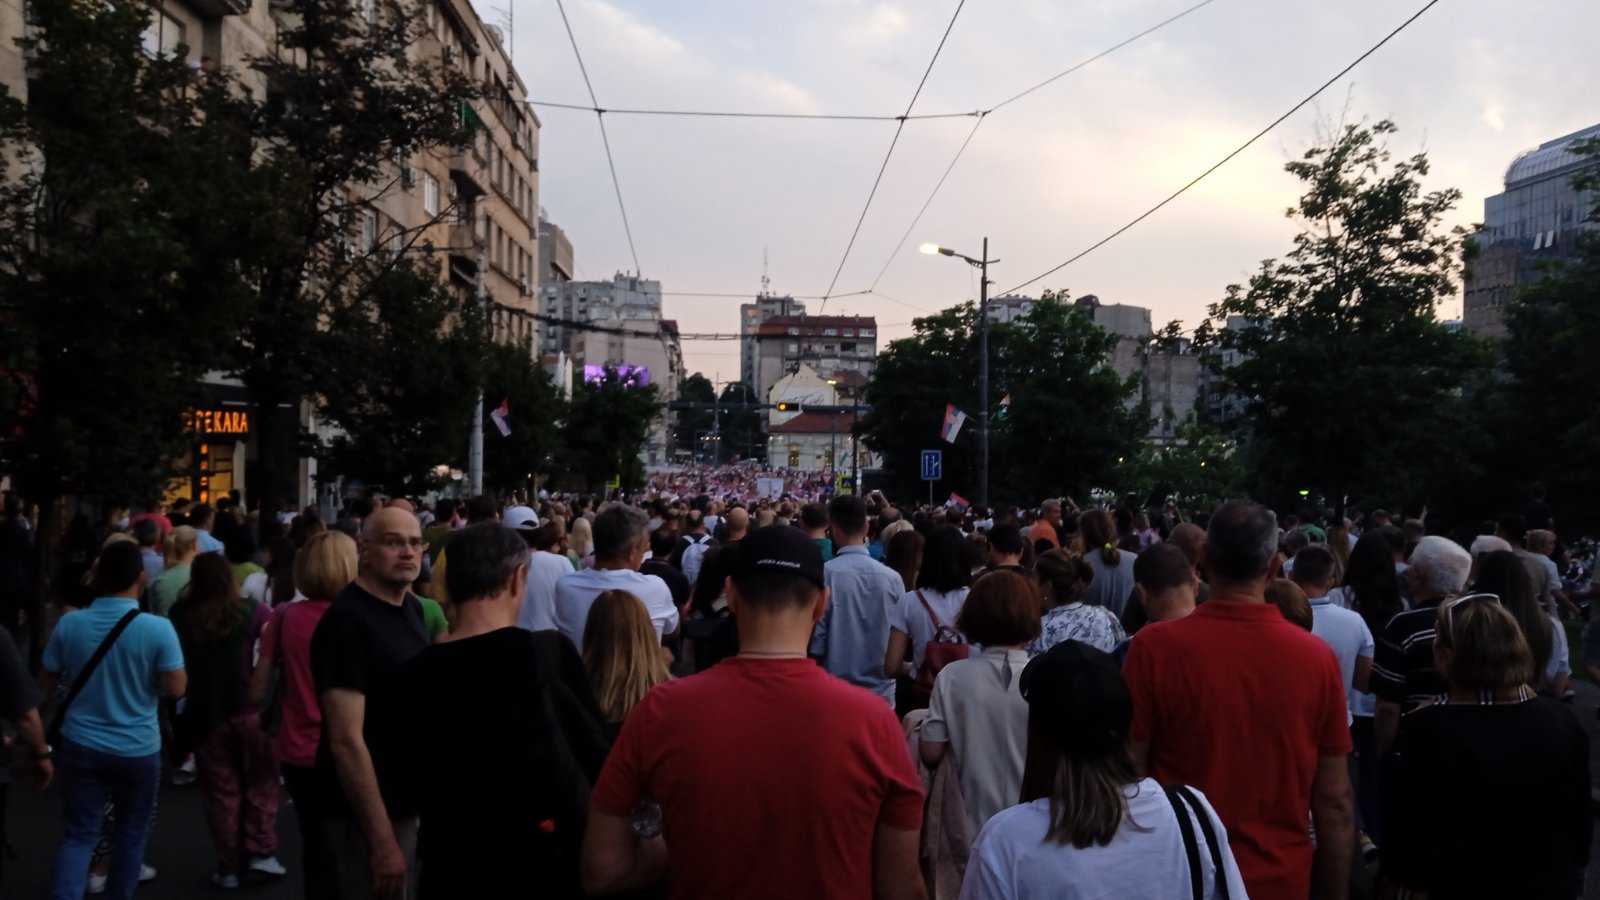 Završen šesti protest "Srbija protiv nasilja": Najavljeno novo okupljanje ako se ne ispune zahtevi 9